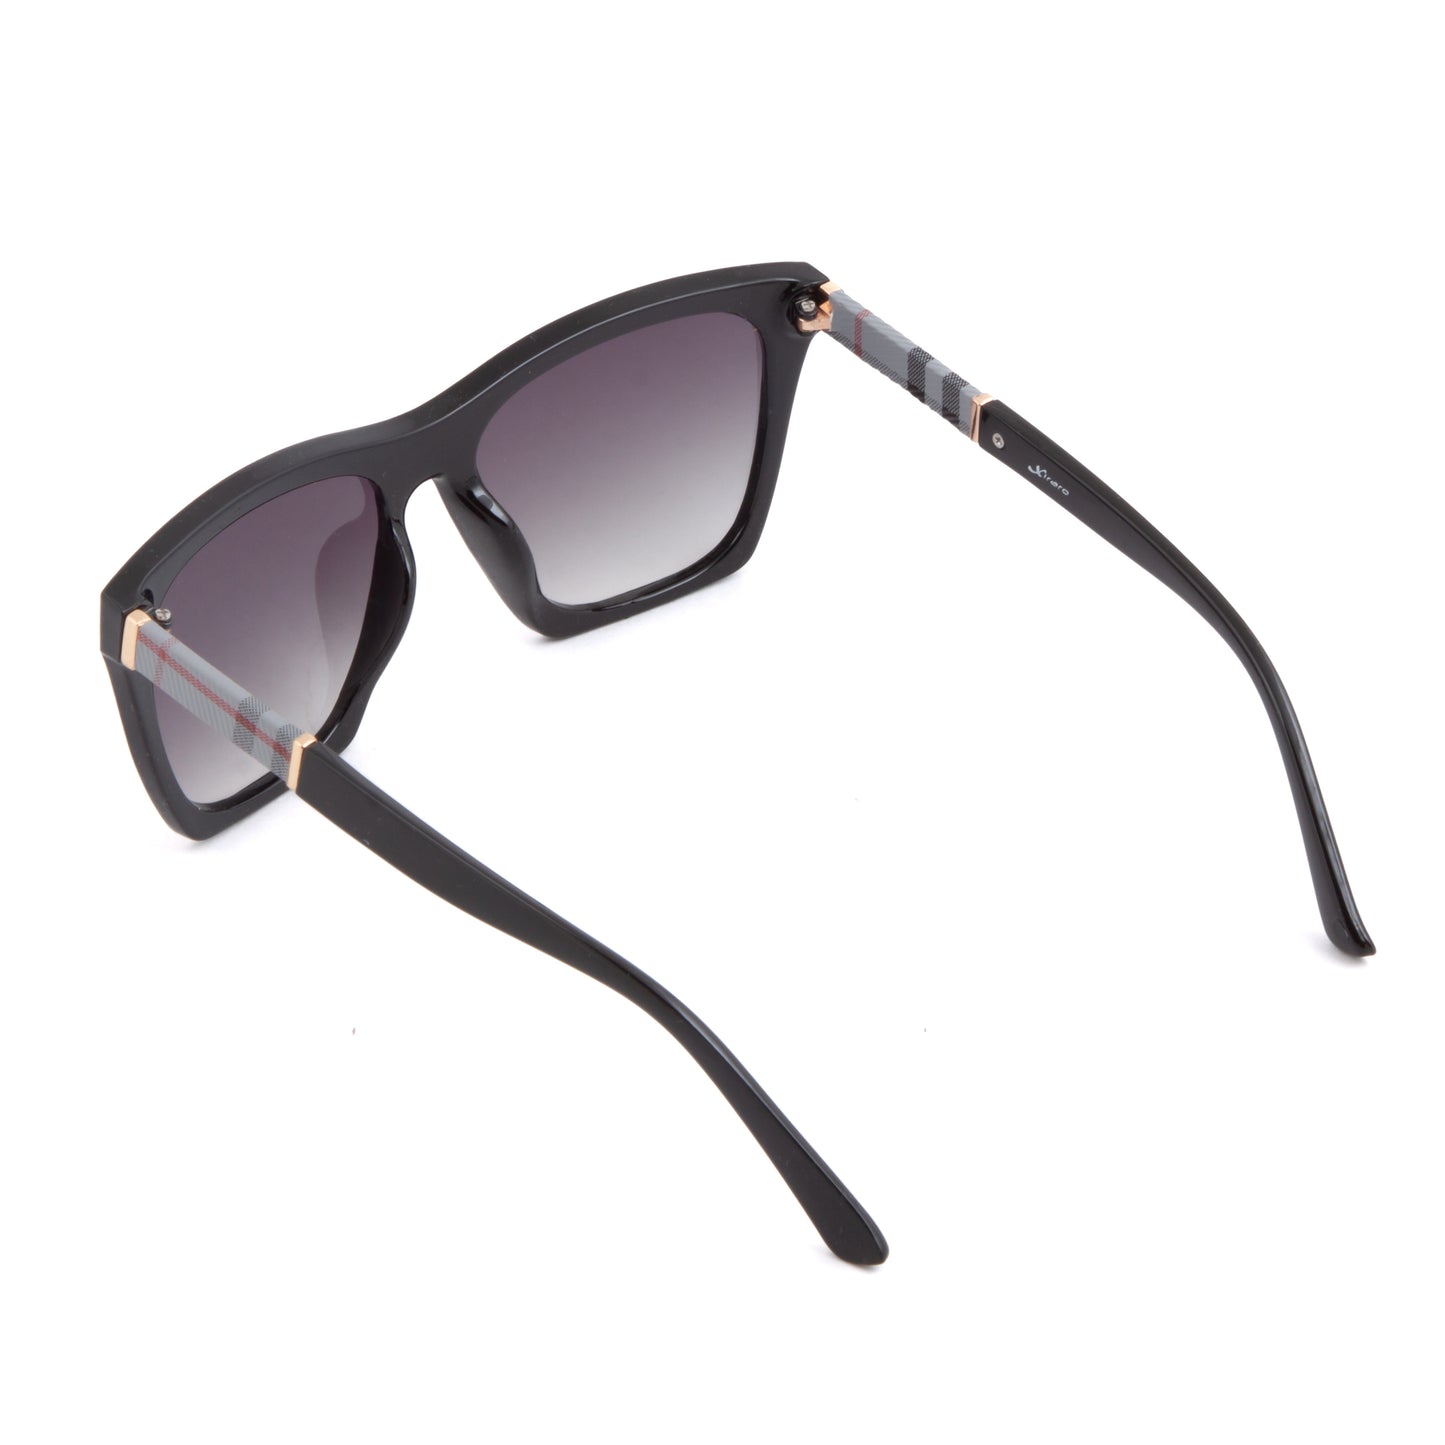 Xiraro Wayfarer Sunglasses for Women (TB520)